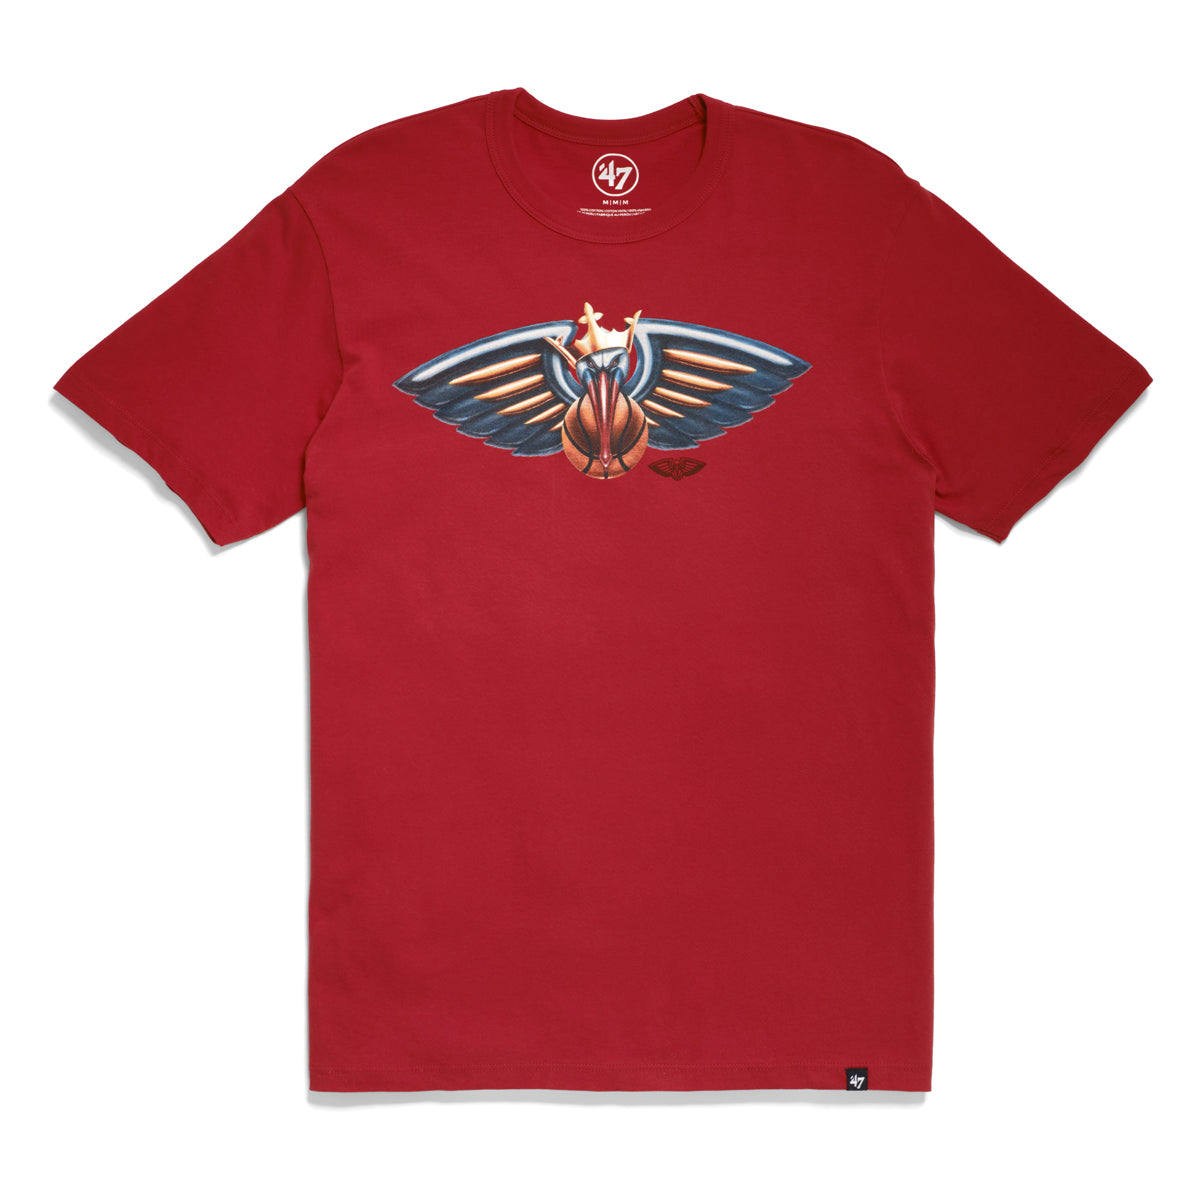 New Orleans Pelicans Crown '47 Men's Franklin T-Shirt